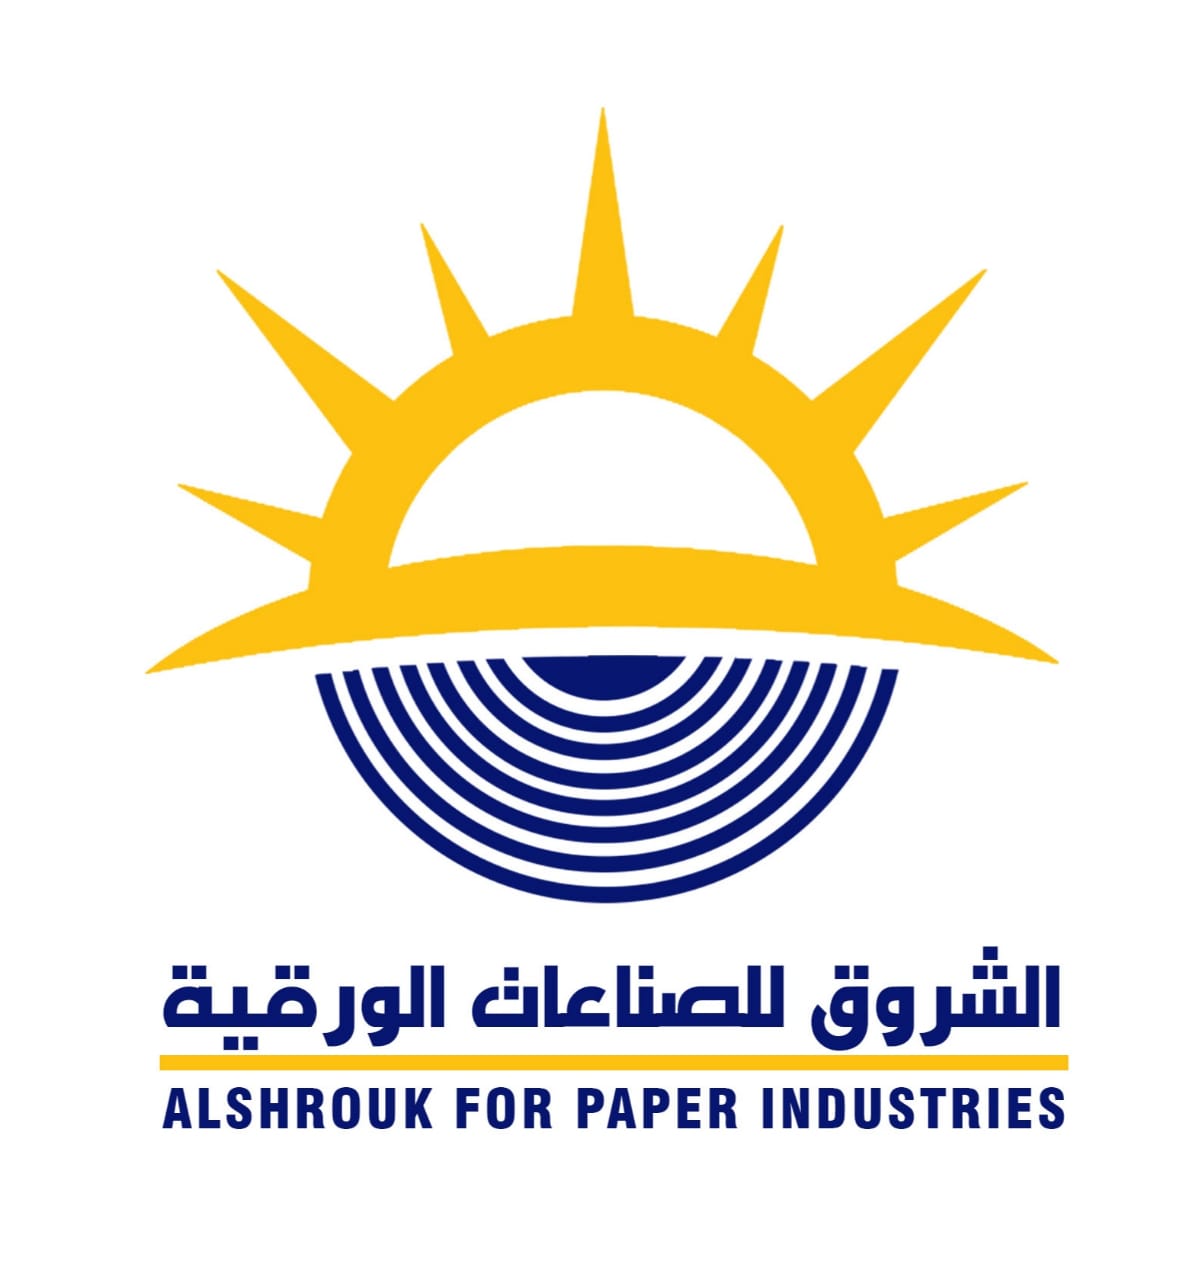 Alshrouk Paper Industries